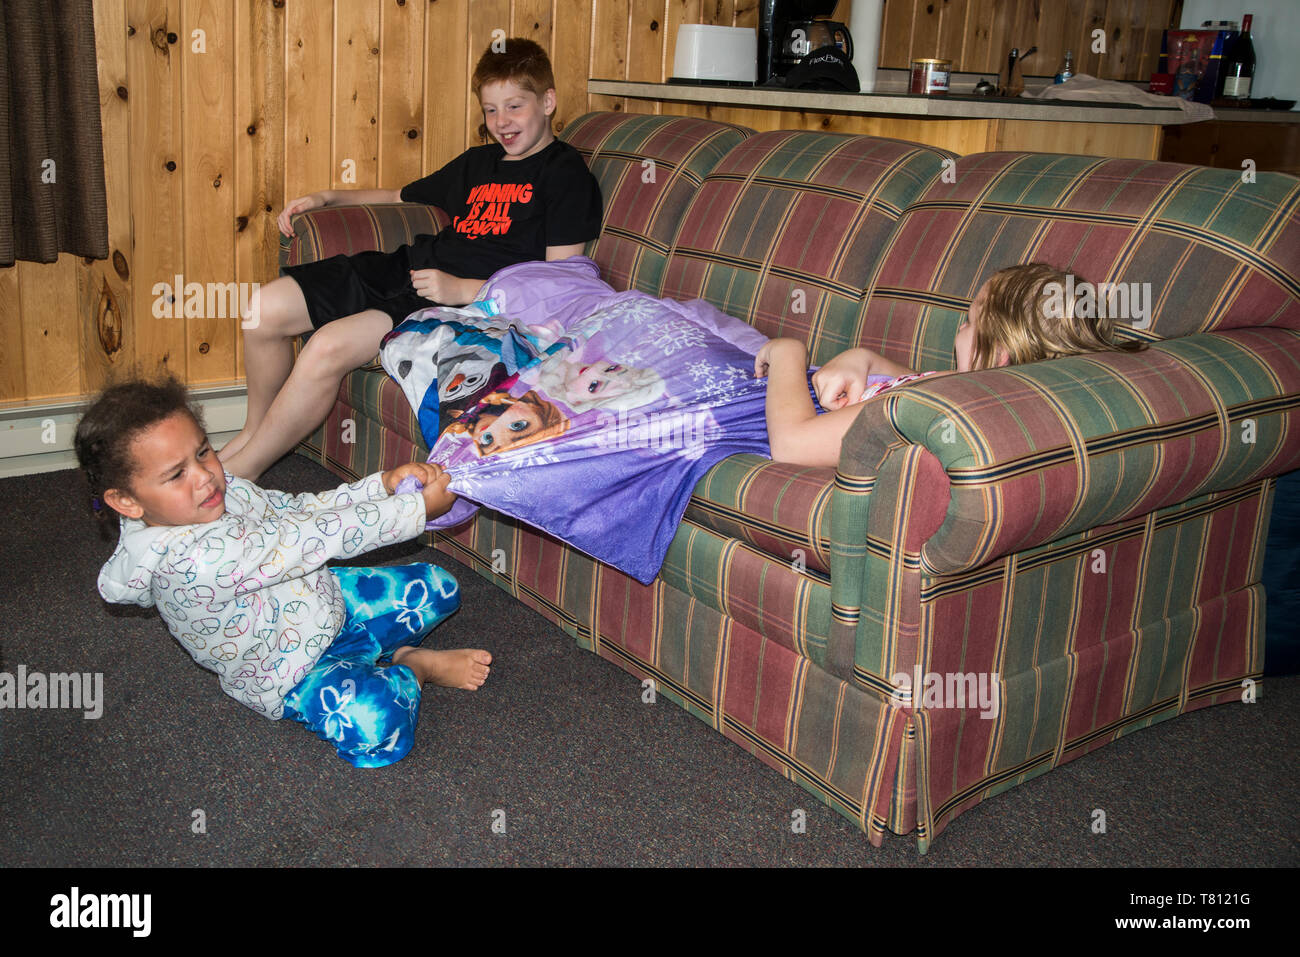 Naytahwaush; Minnesota. Ein junges Kind, das versucht ihr Liebling Decke zurück von ihrer Schwester zu erhalten, während ihr Bruder Uhren. Stockfoto